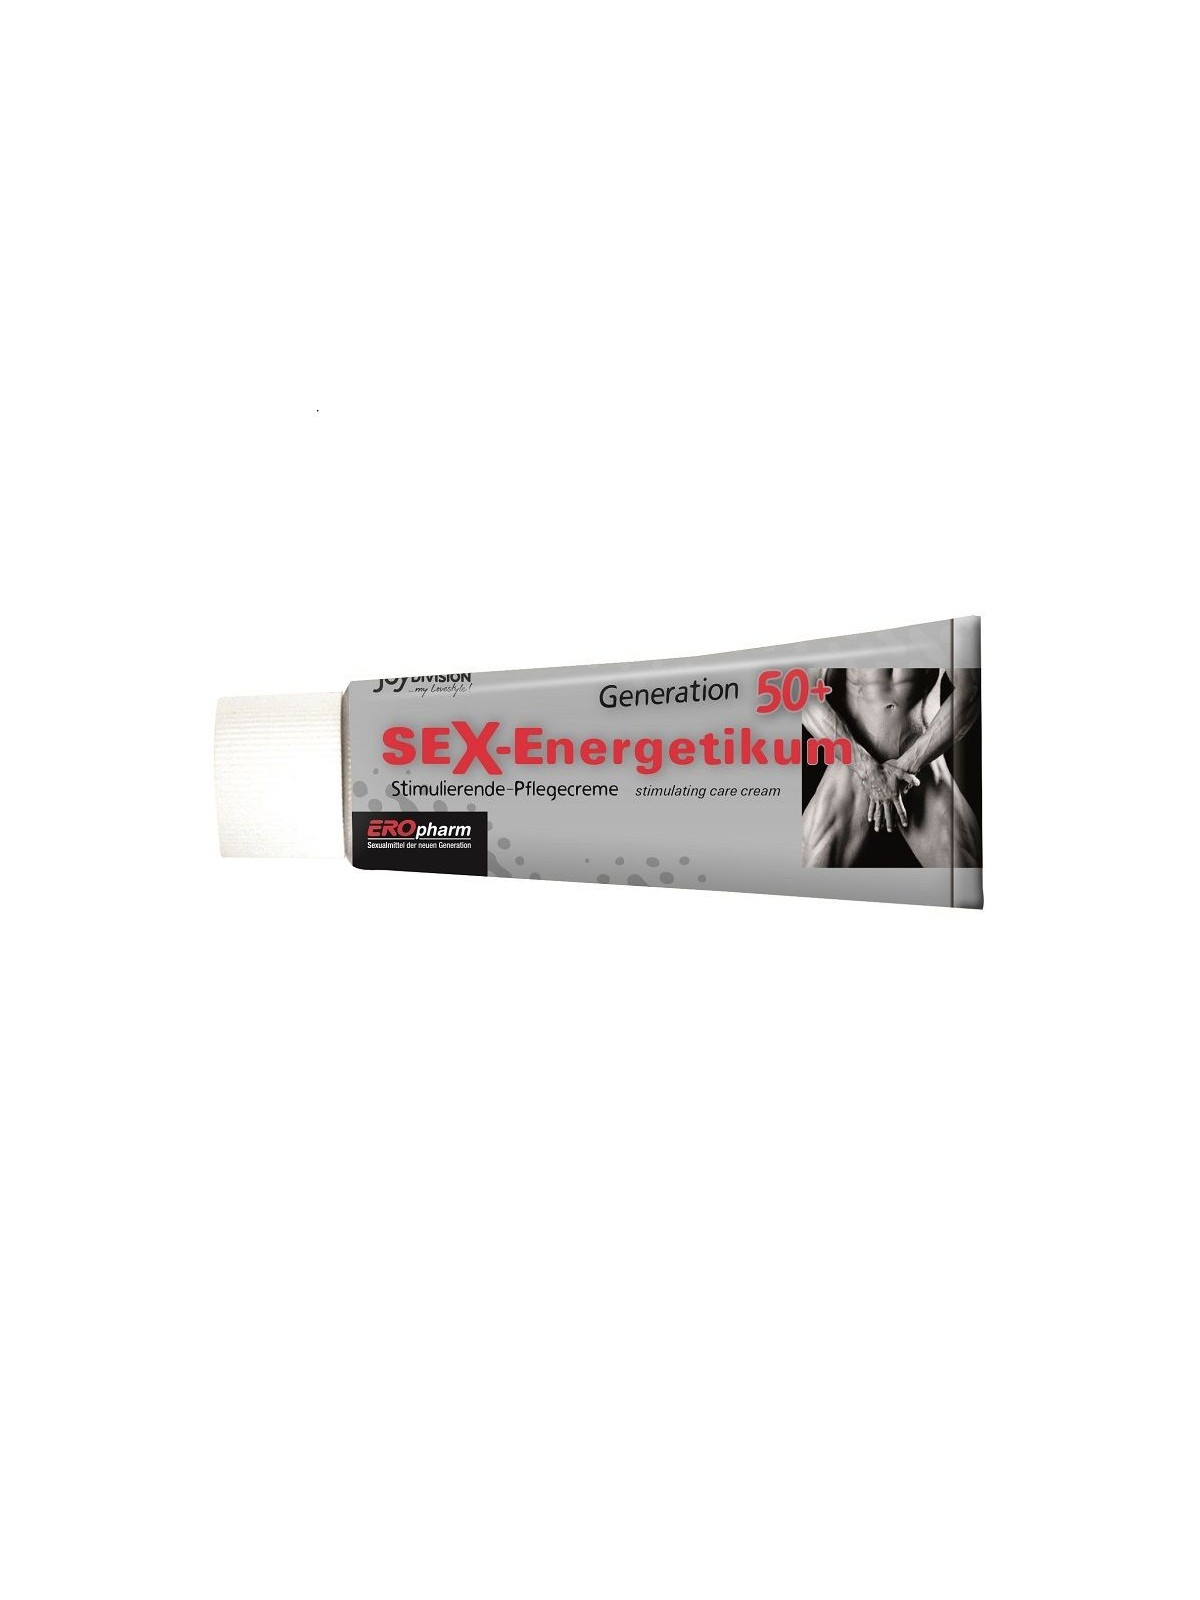 Eropharm Sex Energetikum Generación 50 & Crema - Comprar Potenciador erección Eropharm - Potenciadores de erección (1)